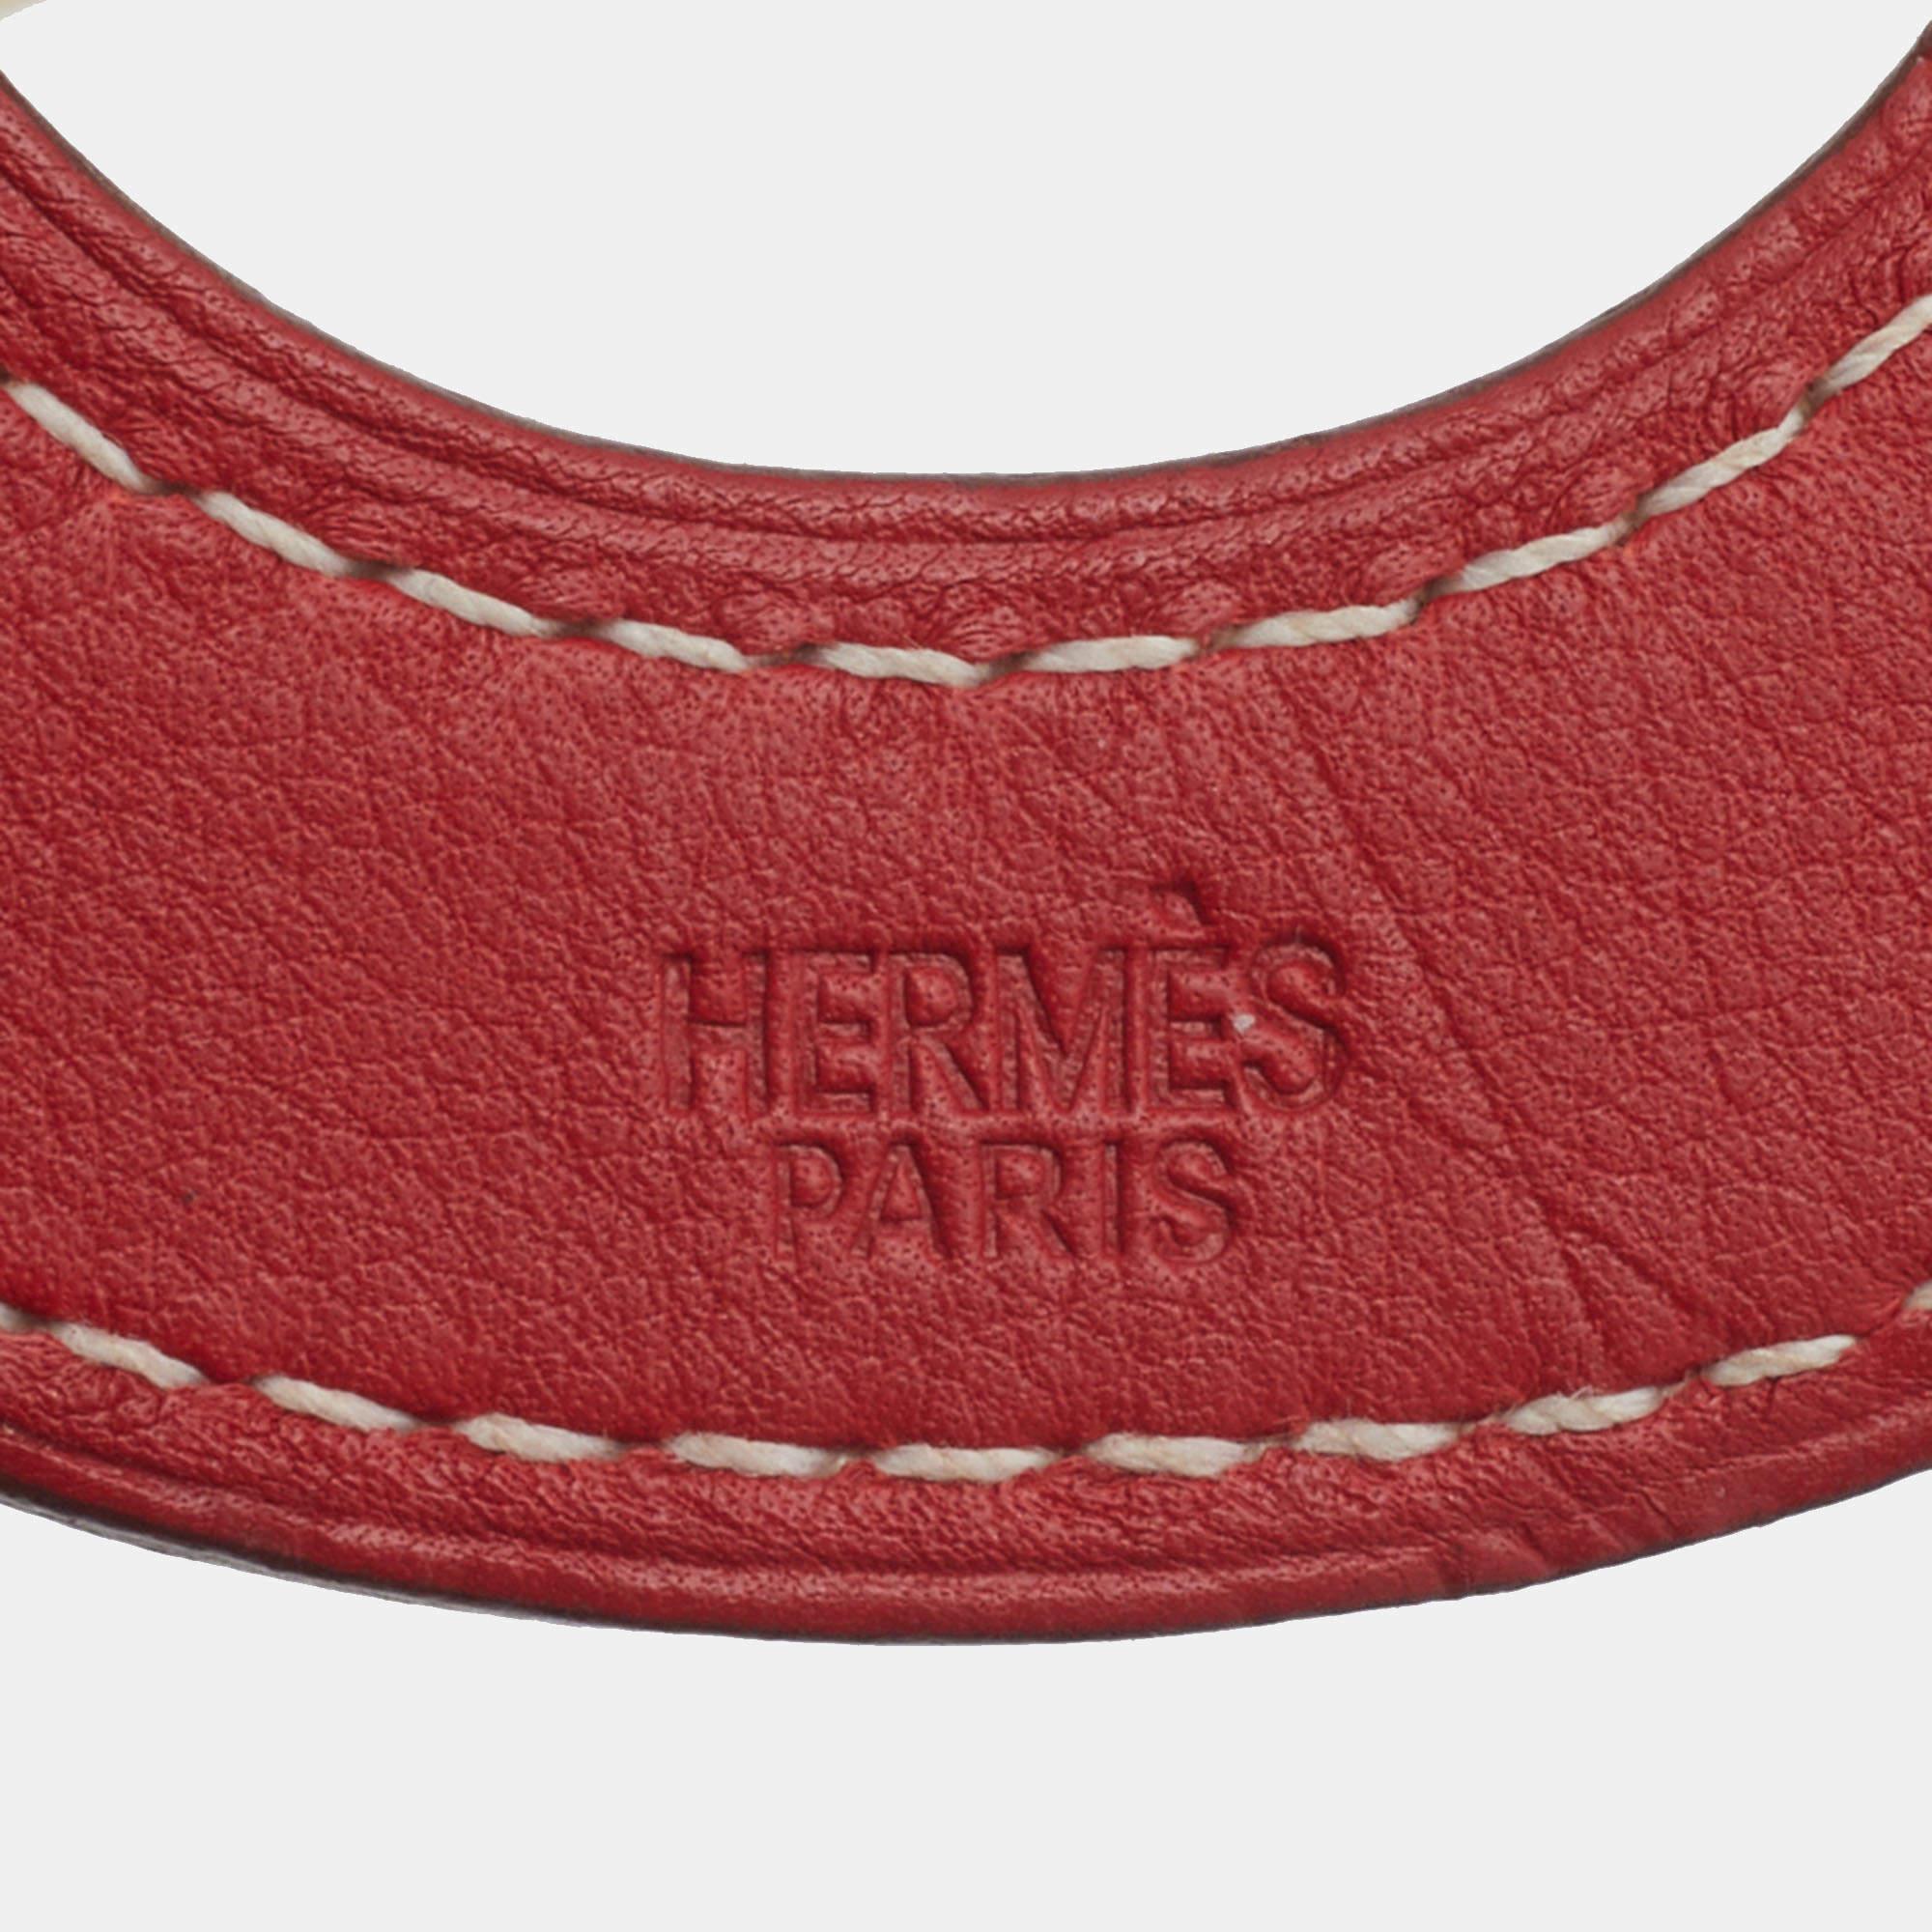 Definieren Sie Ihren Hals mit dieser super-stylischen Halskette von Hermes. Es ist eine meisterhaft gefertigte Kreation, die ihre Schönheit und ihren Wert für lange Zeit zu erhalten verspricht.

Enthält: Original-Staubbeutel

